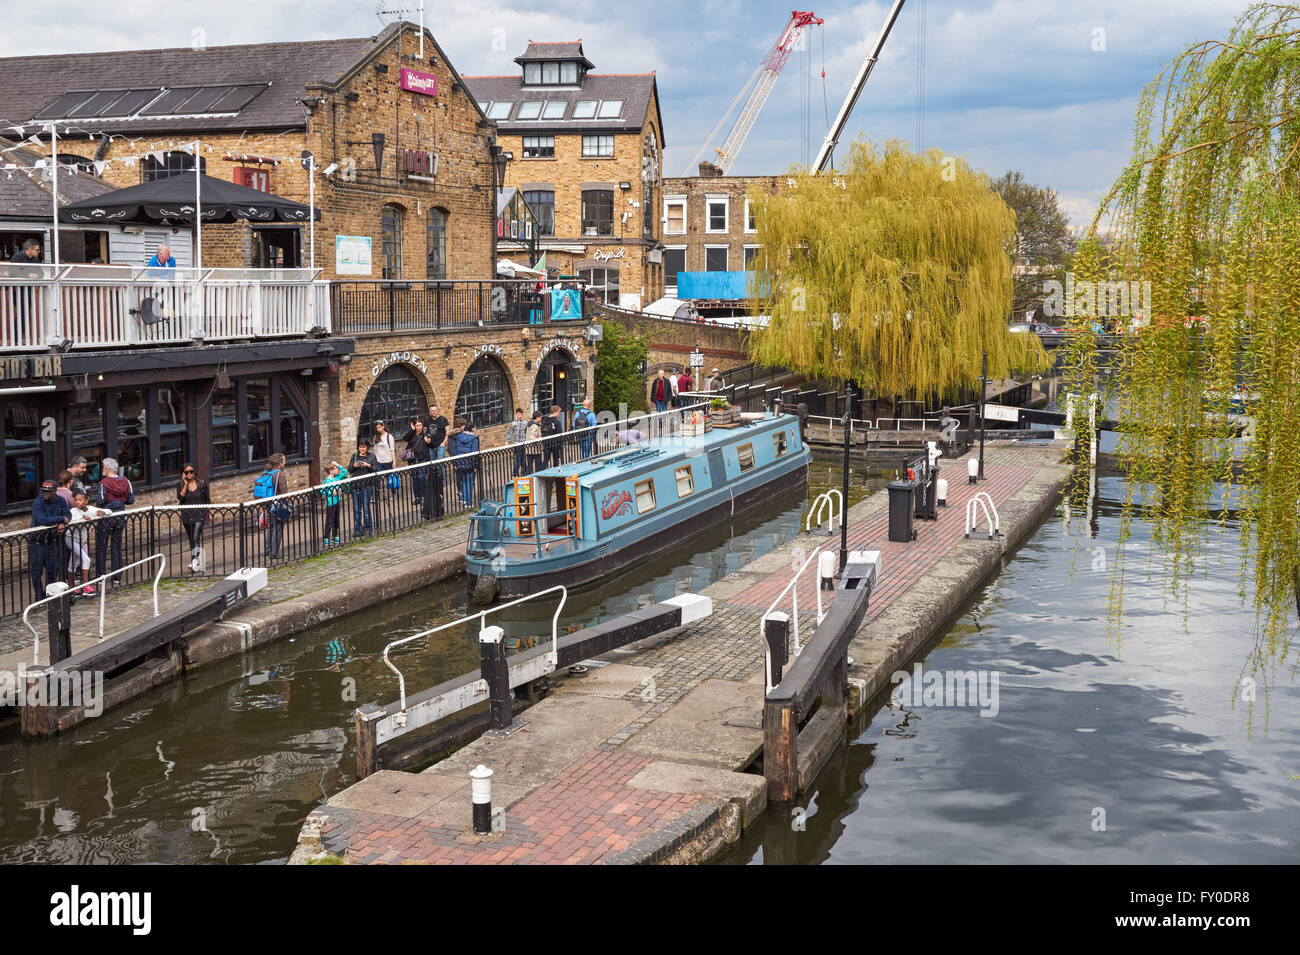 Bateau à rames à Hampstead Rock Lock ou Camden Lock sur Regents Canal, Camden Town, Londres Angleterre Royaume-Uni Banque D'Images